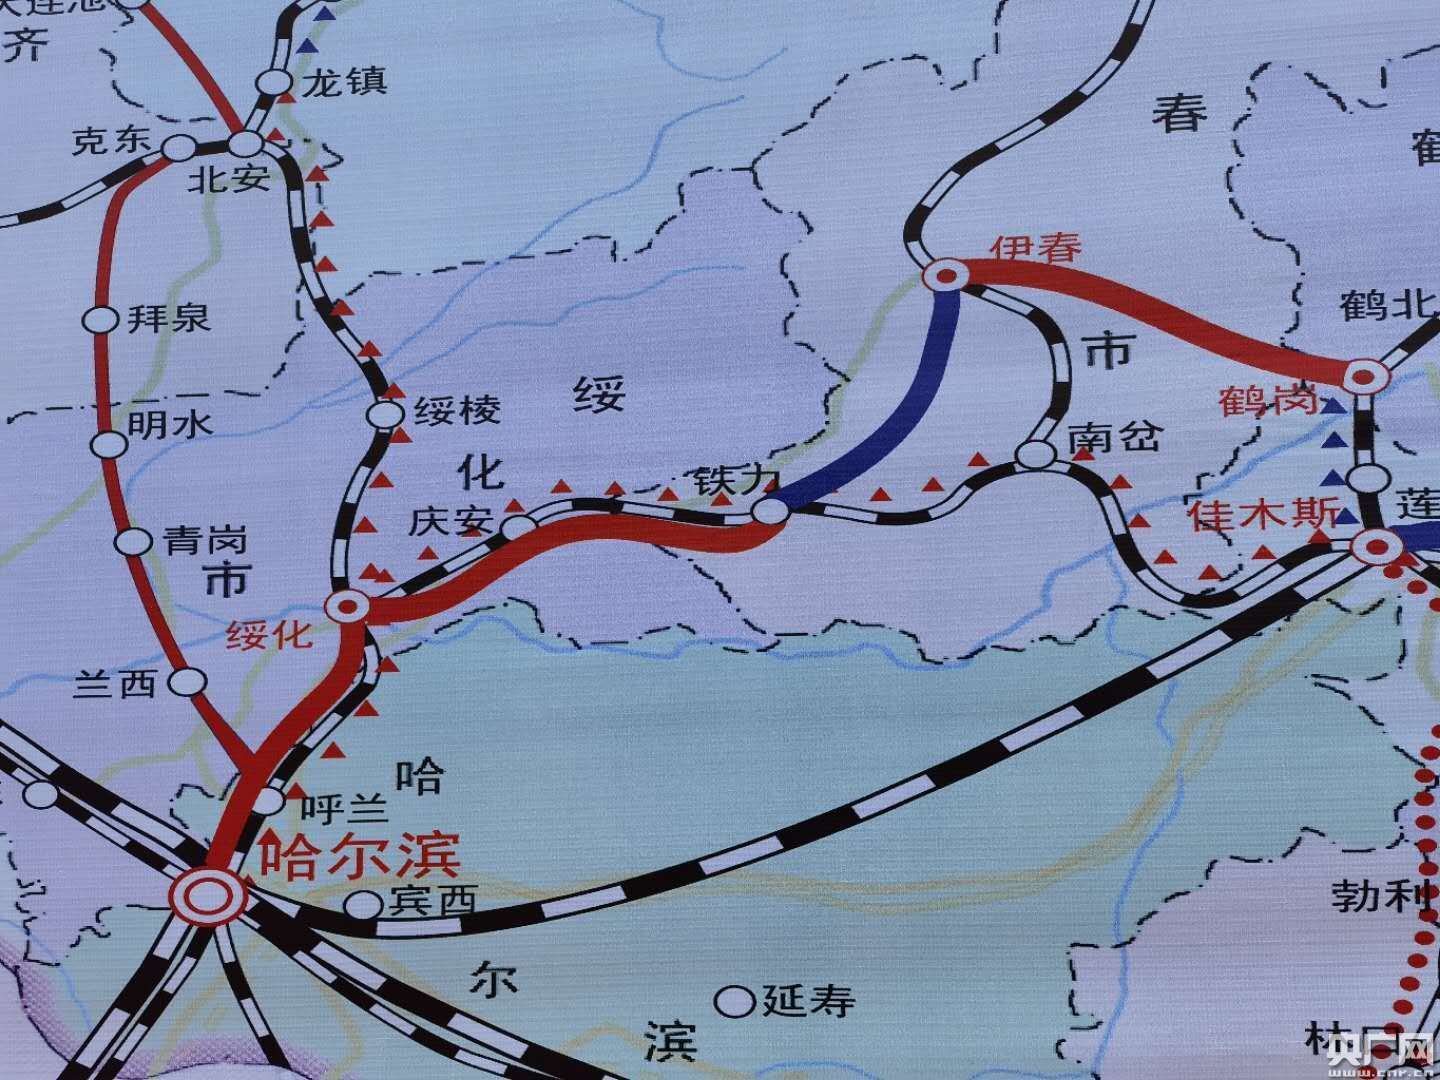 中国高铁向北再延伸 哈伊高铁建设今日启动